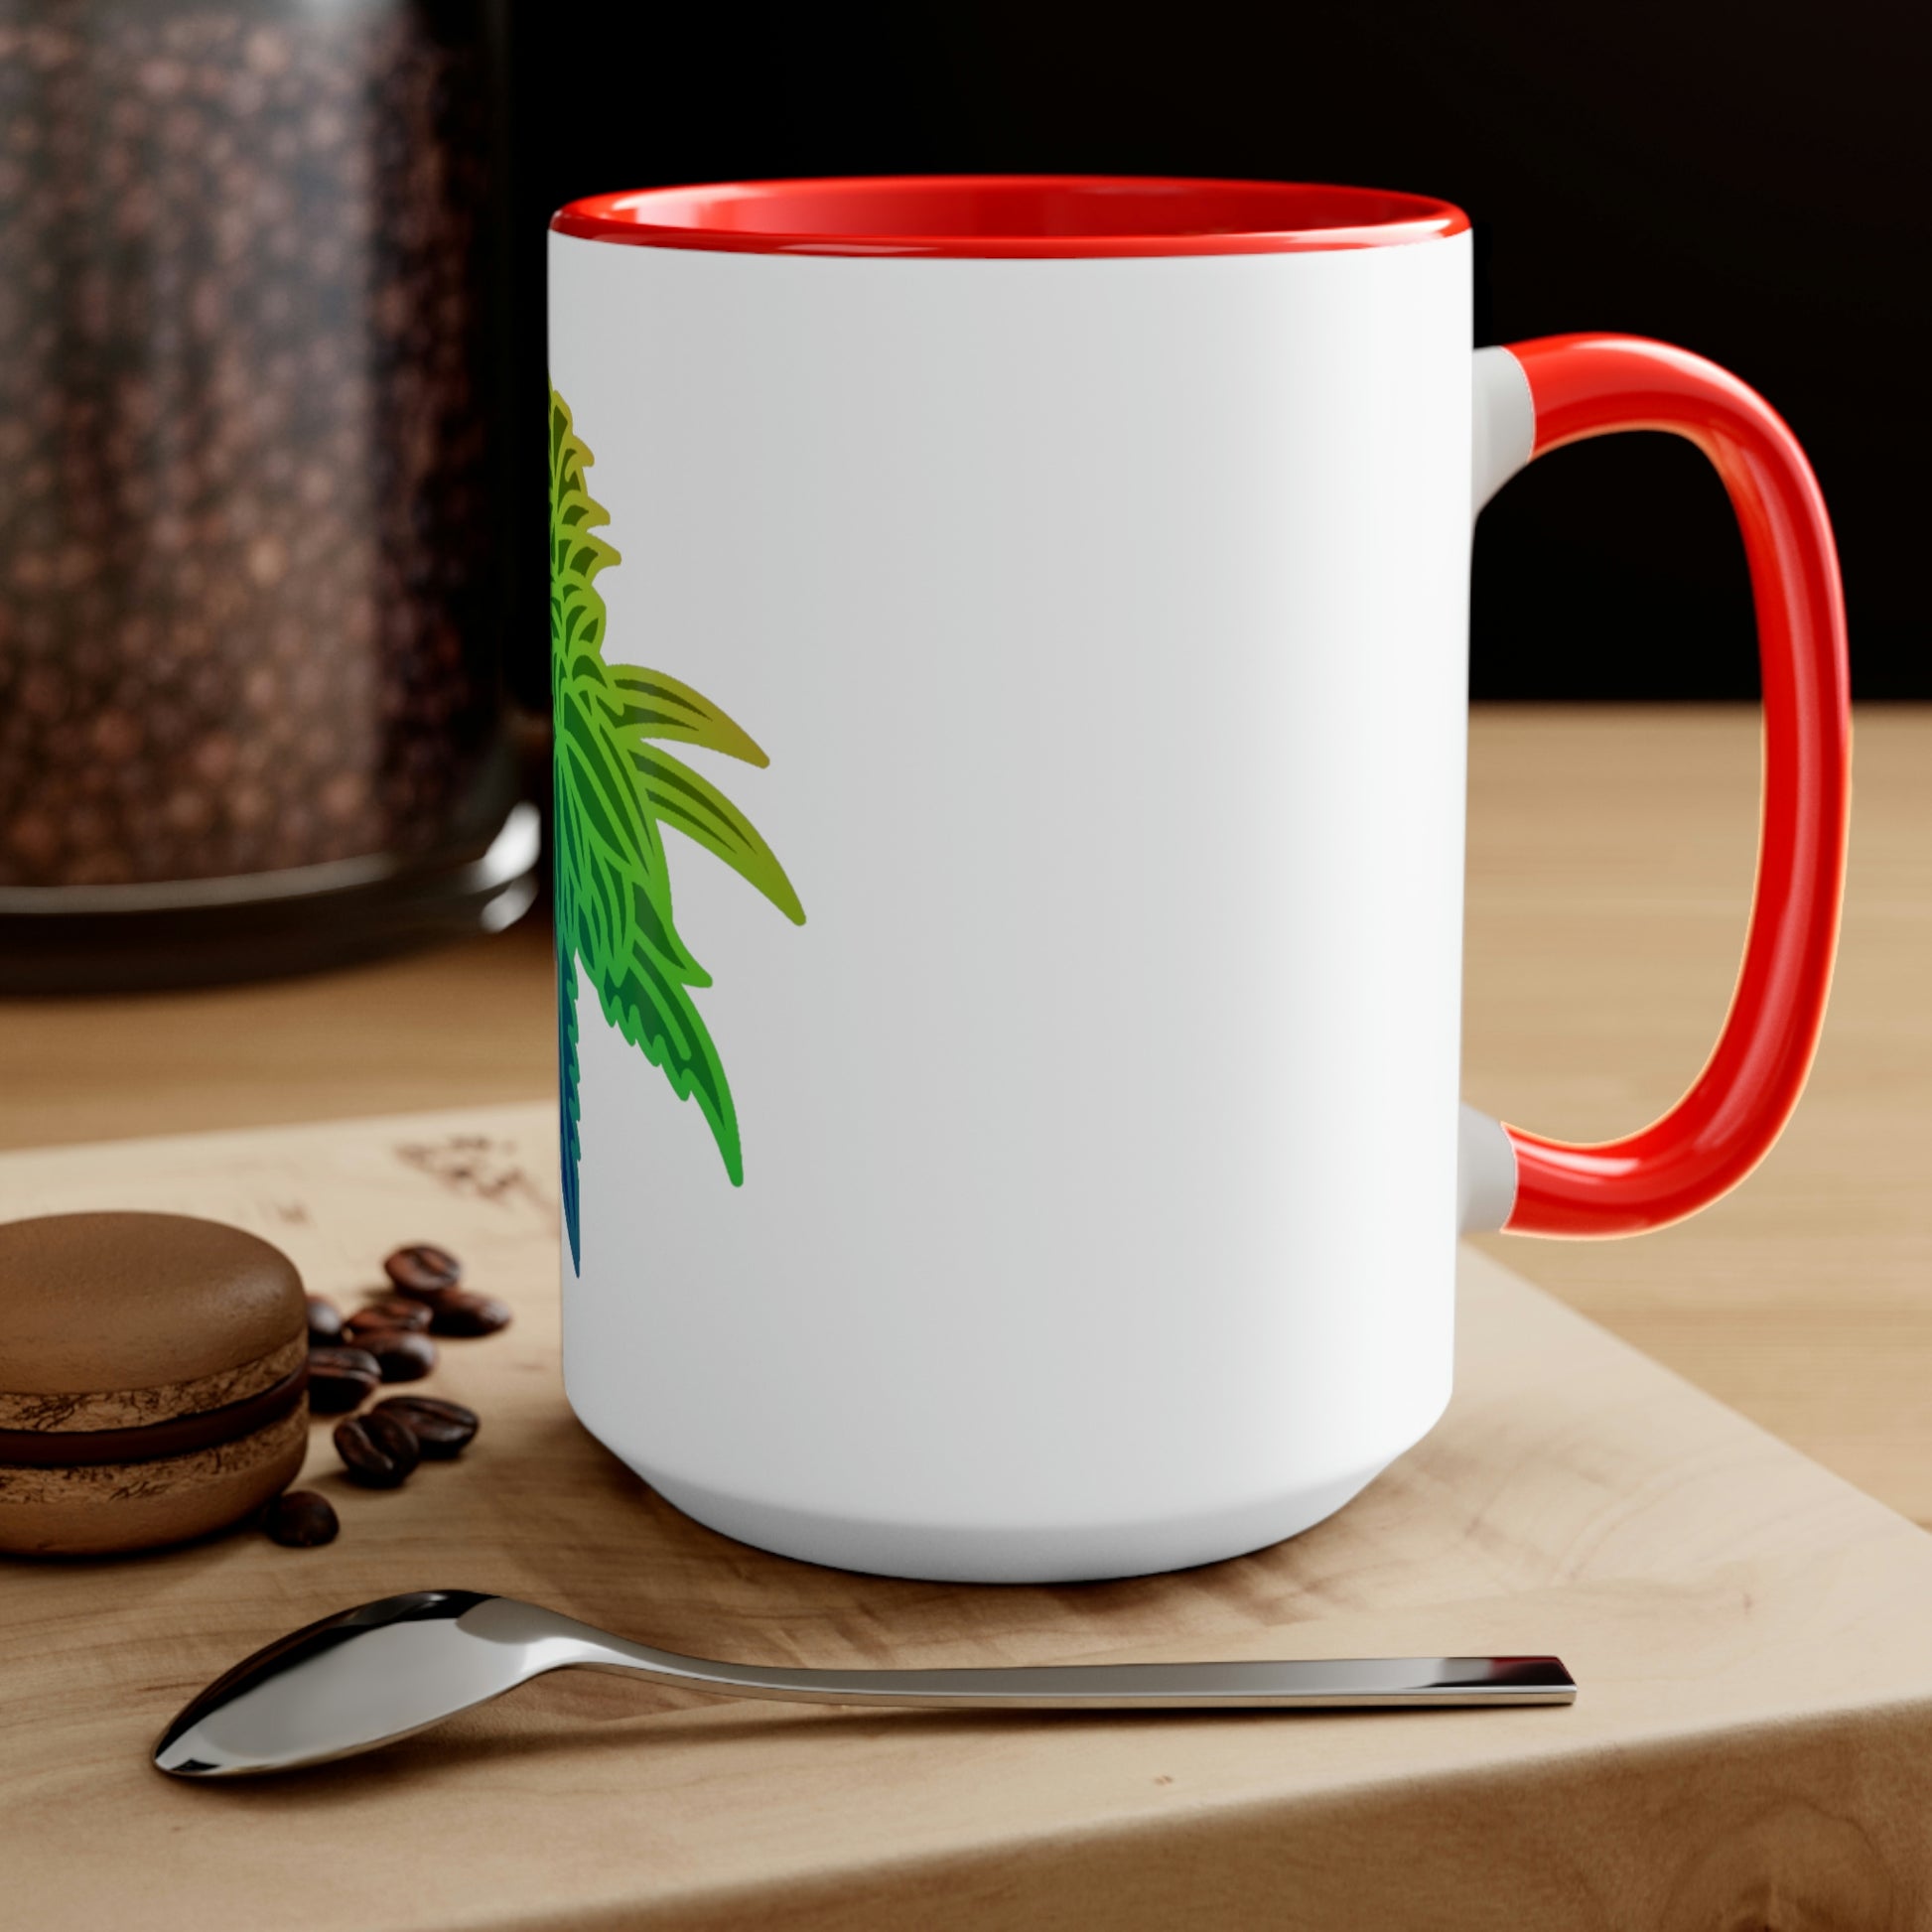 A Rainbow Sherbet Marijuana Tea Mug with a flower on it.